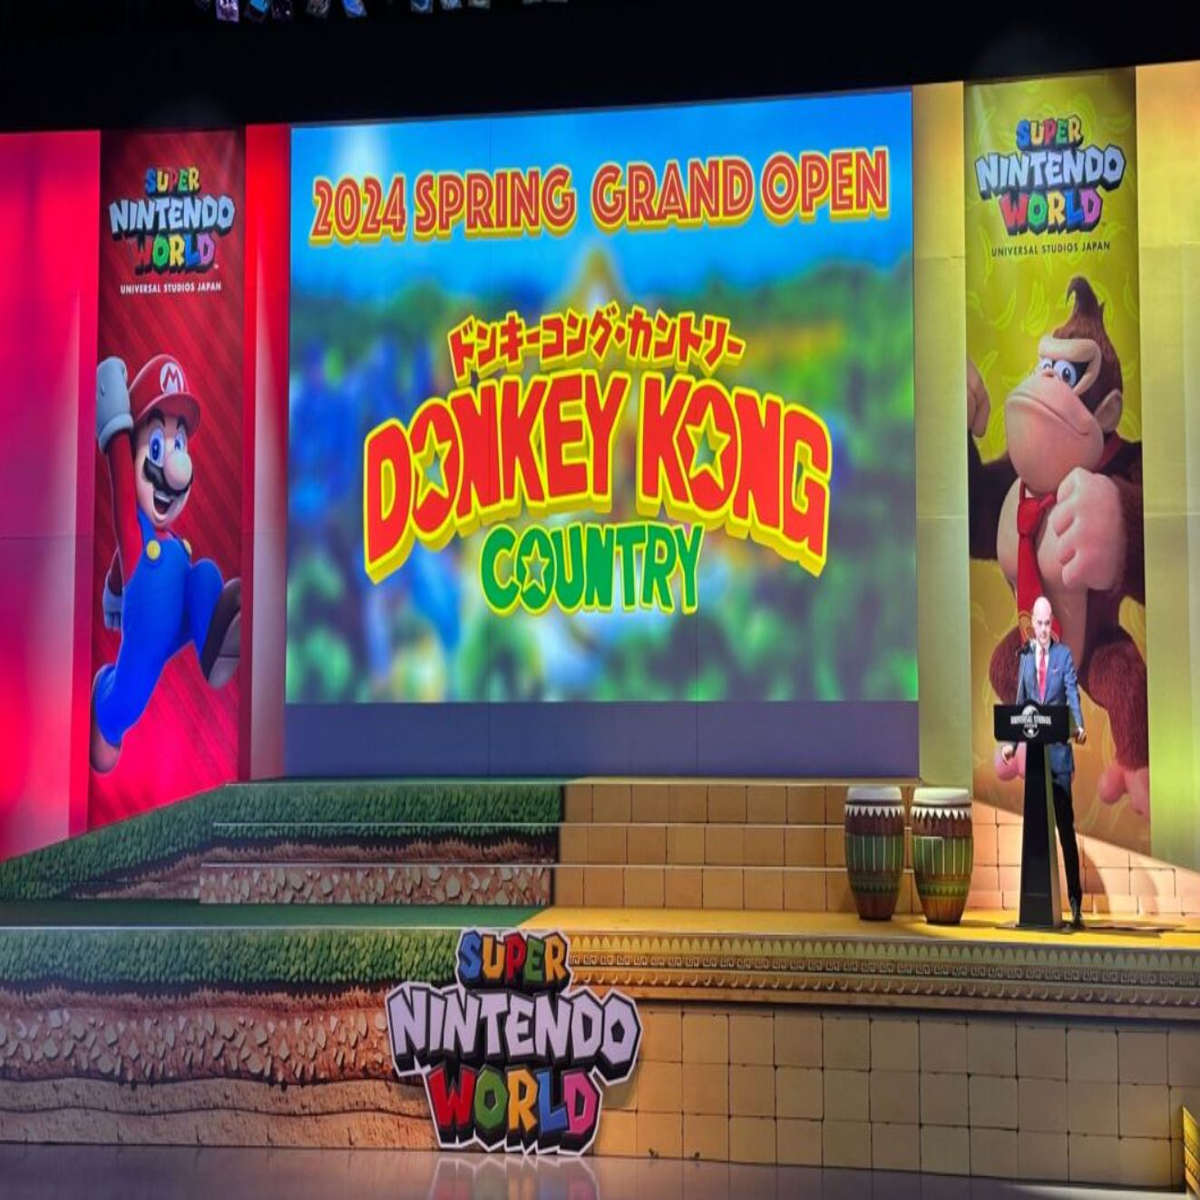 Super Nintento World, no Japão, terá atrações inspiradas em Donkey Kong a  partir de 2024 - Jornal O Globo